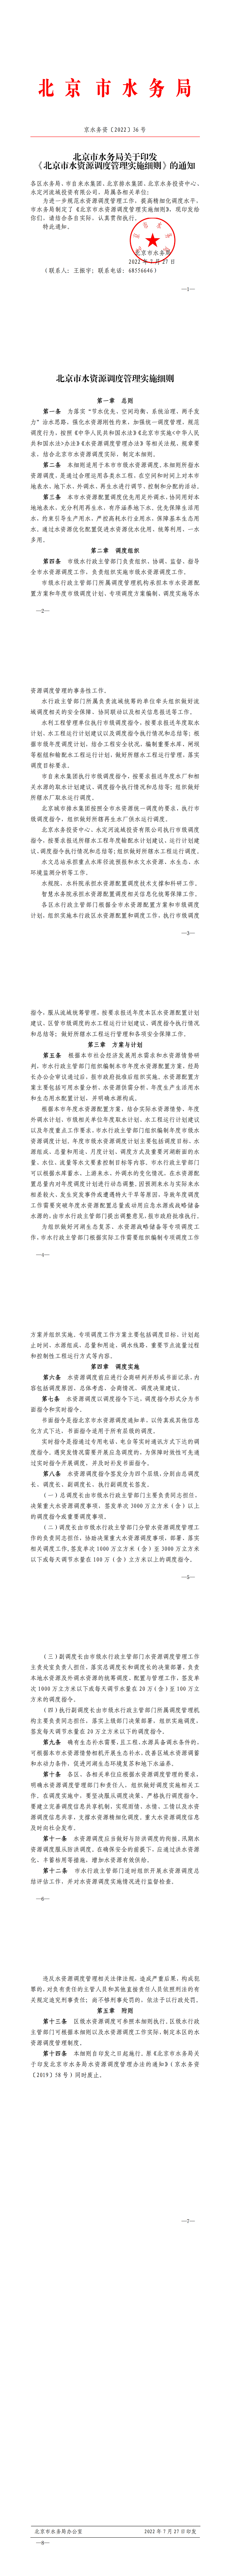 北京市水务局关于印发《北京市水资源调度管理实施细则》的通知1_00.png